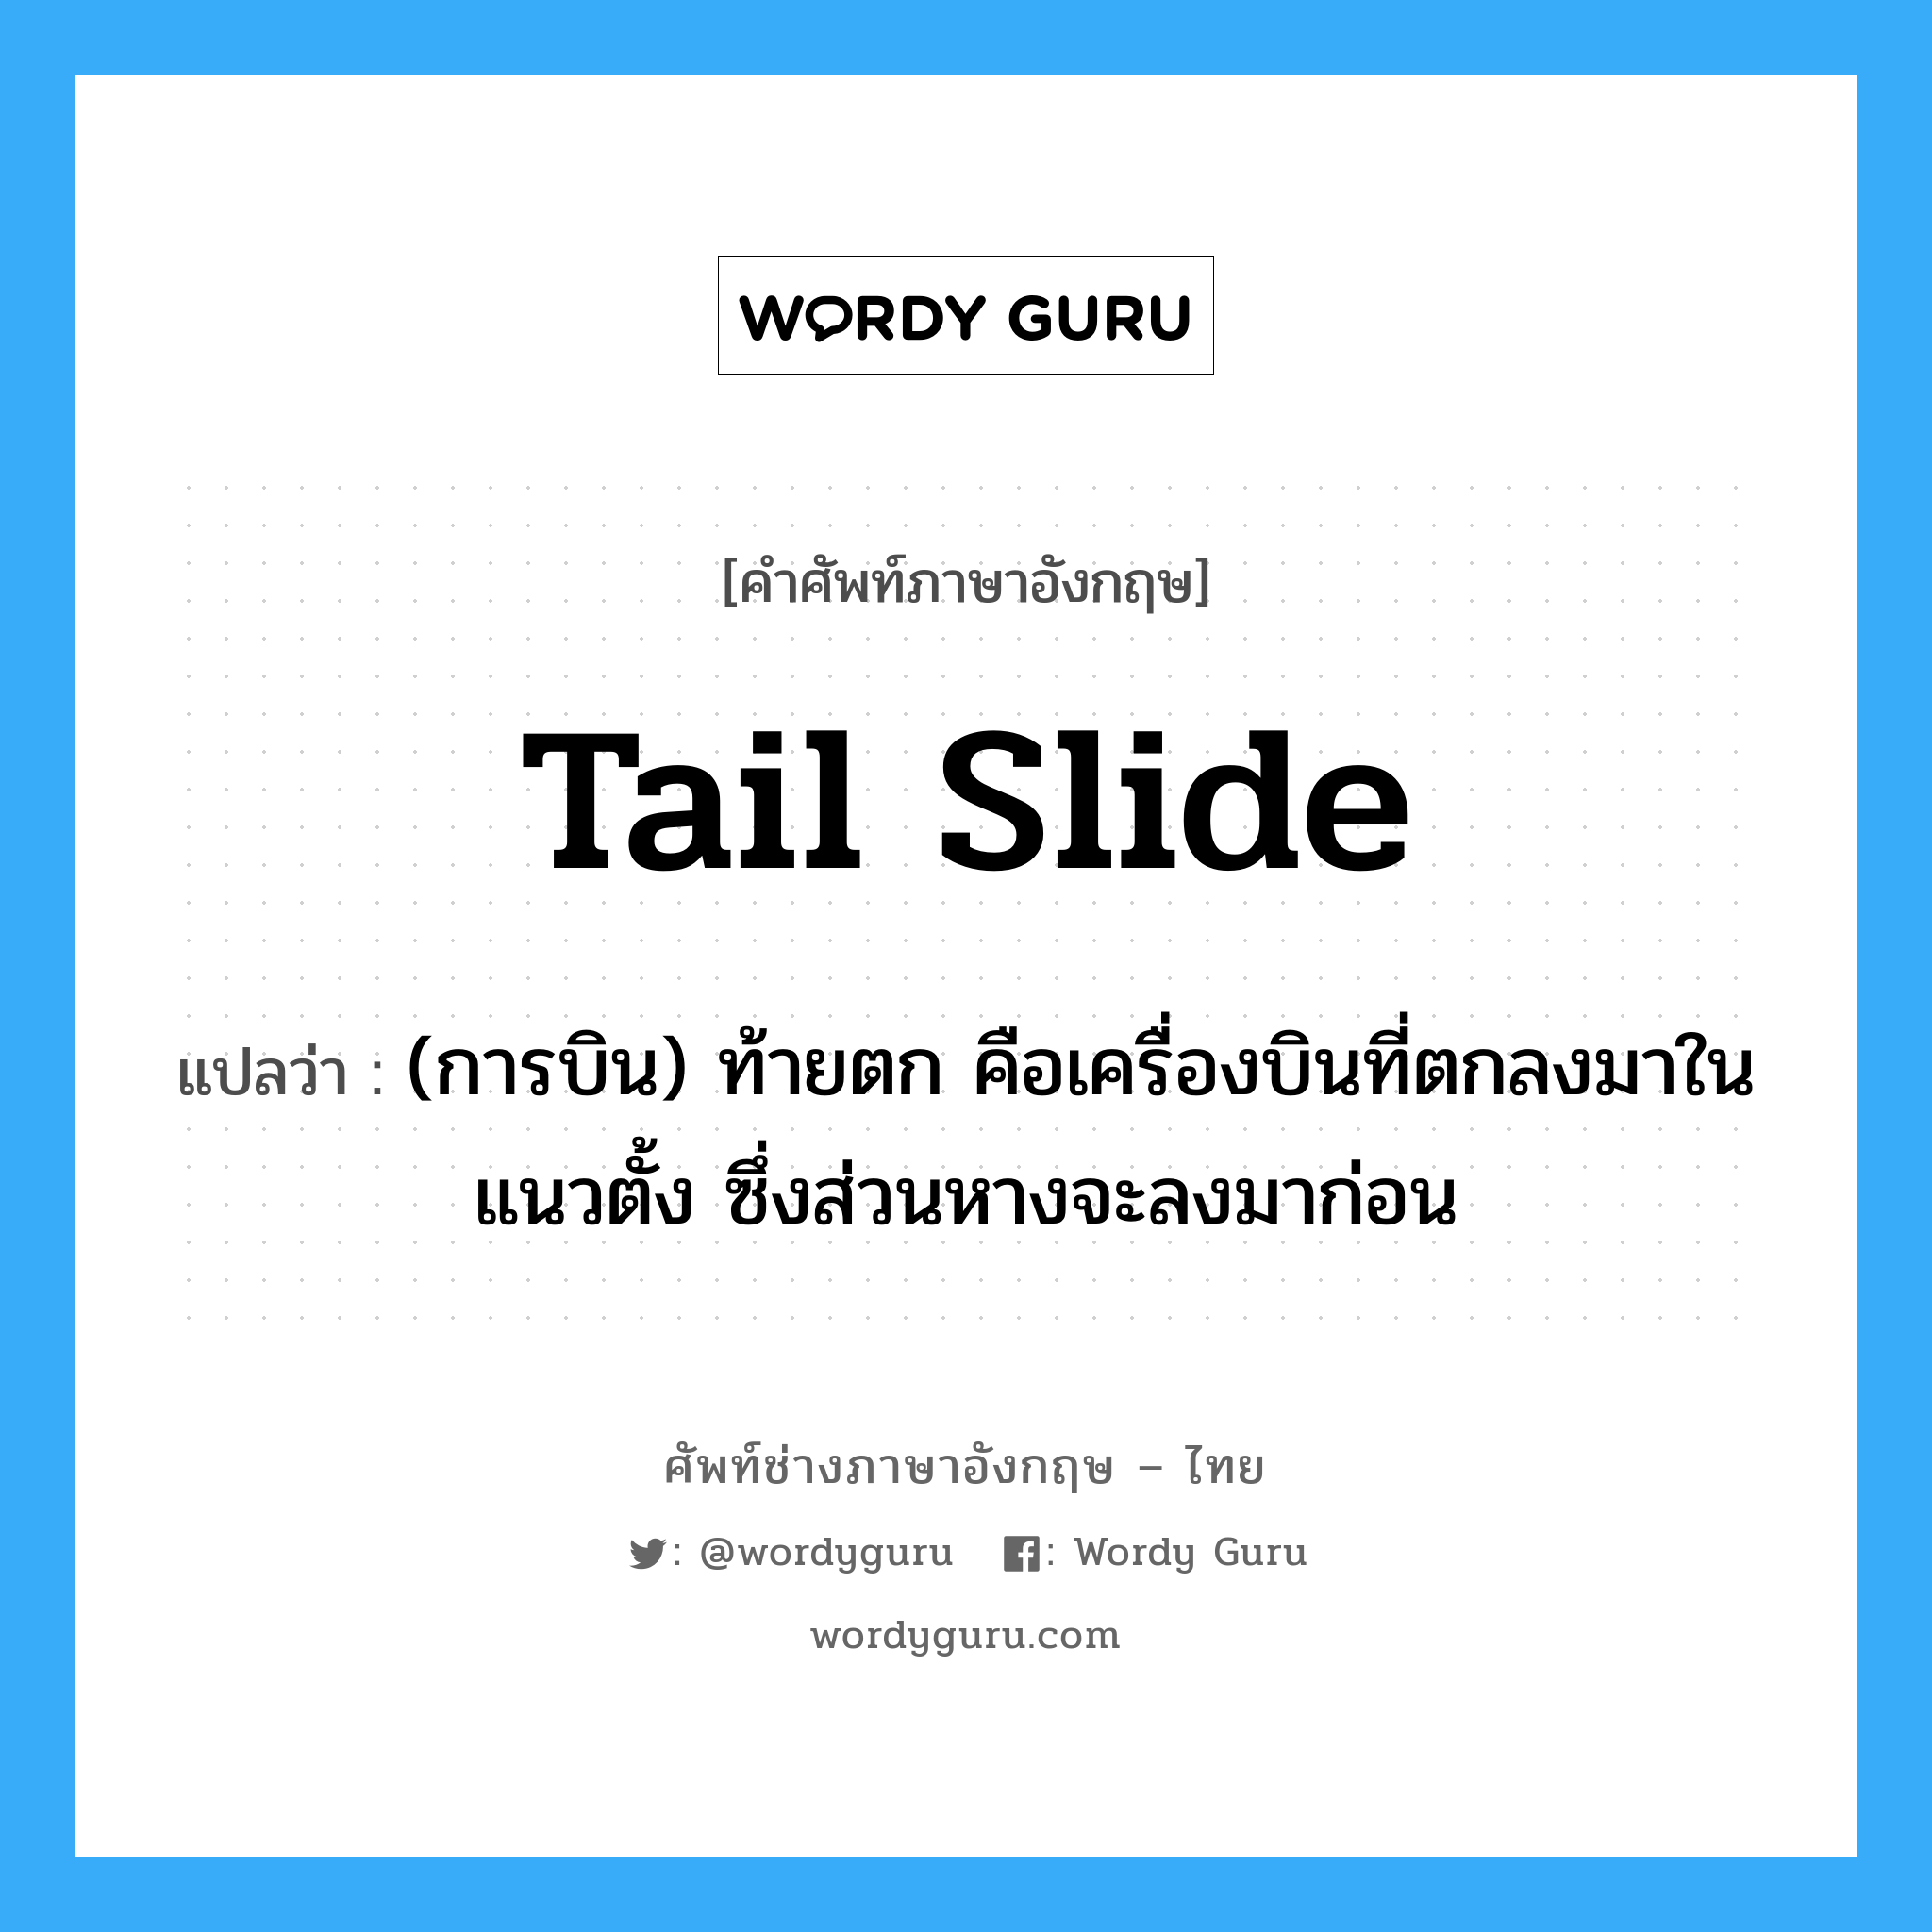 tail slide แปลว่า?, คำศัพท์ช่างภาษาอังกฤษ - ไทย tail slide คำศัพท์ภาษาอังกฤษ tail slide แปลว่า (การบิน) ท้ายตก คือเครื่องบินที่ตกลงมาในแนวตั้ง ซึ่งส่วนหางจะลงมาก่อน